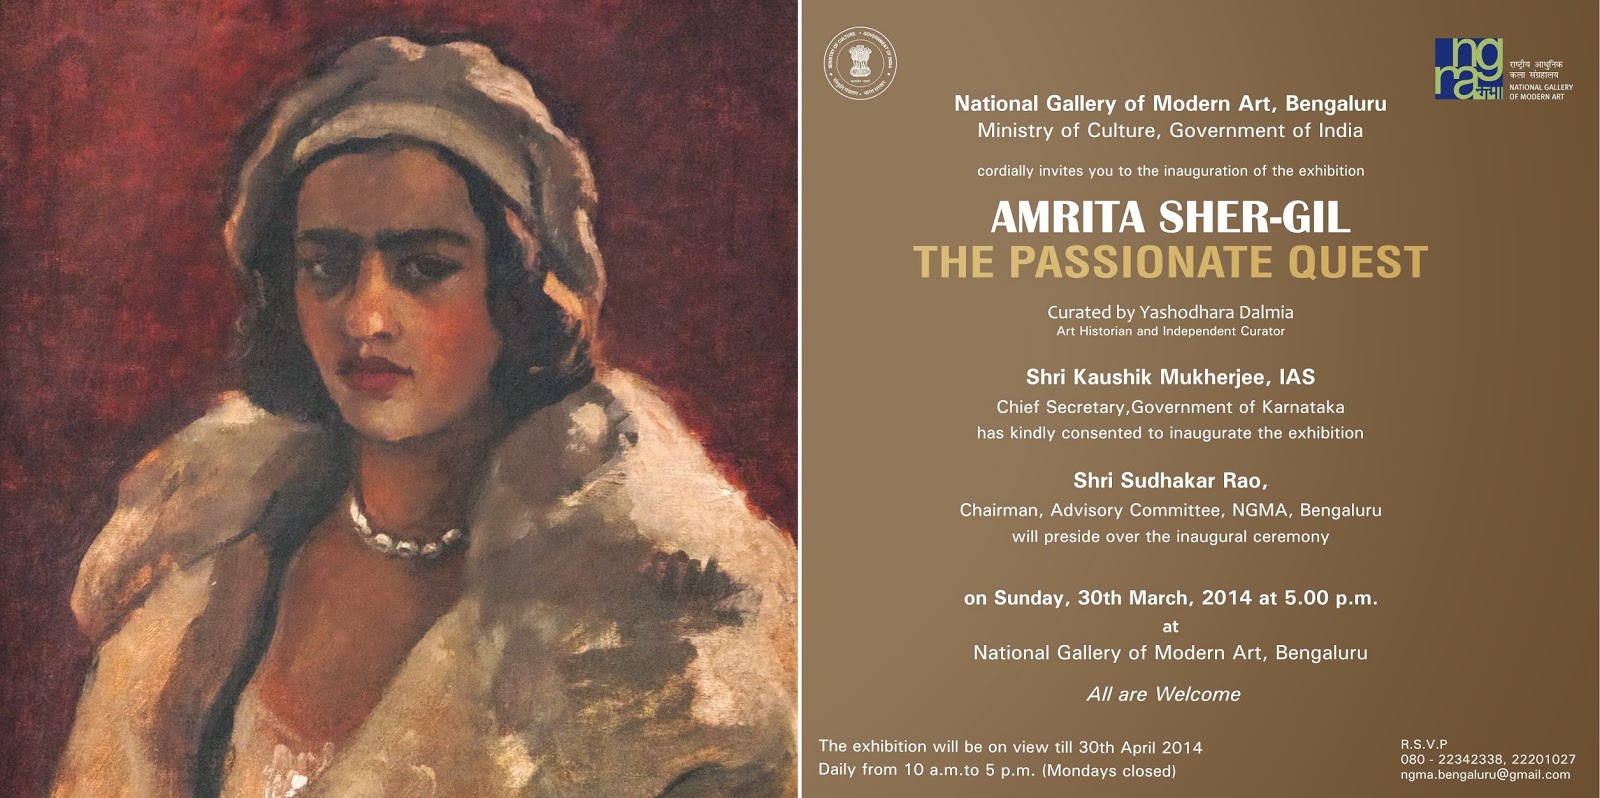  Exhibition "Amrita Sher-Gil" at NGMA Bangalore, image courtesy NGMA Bangalore